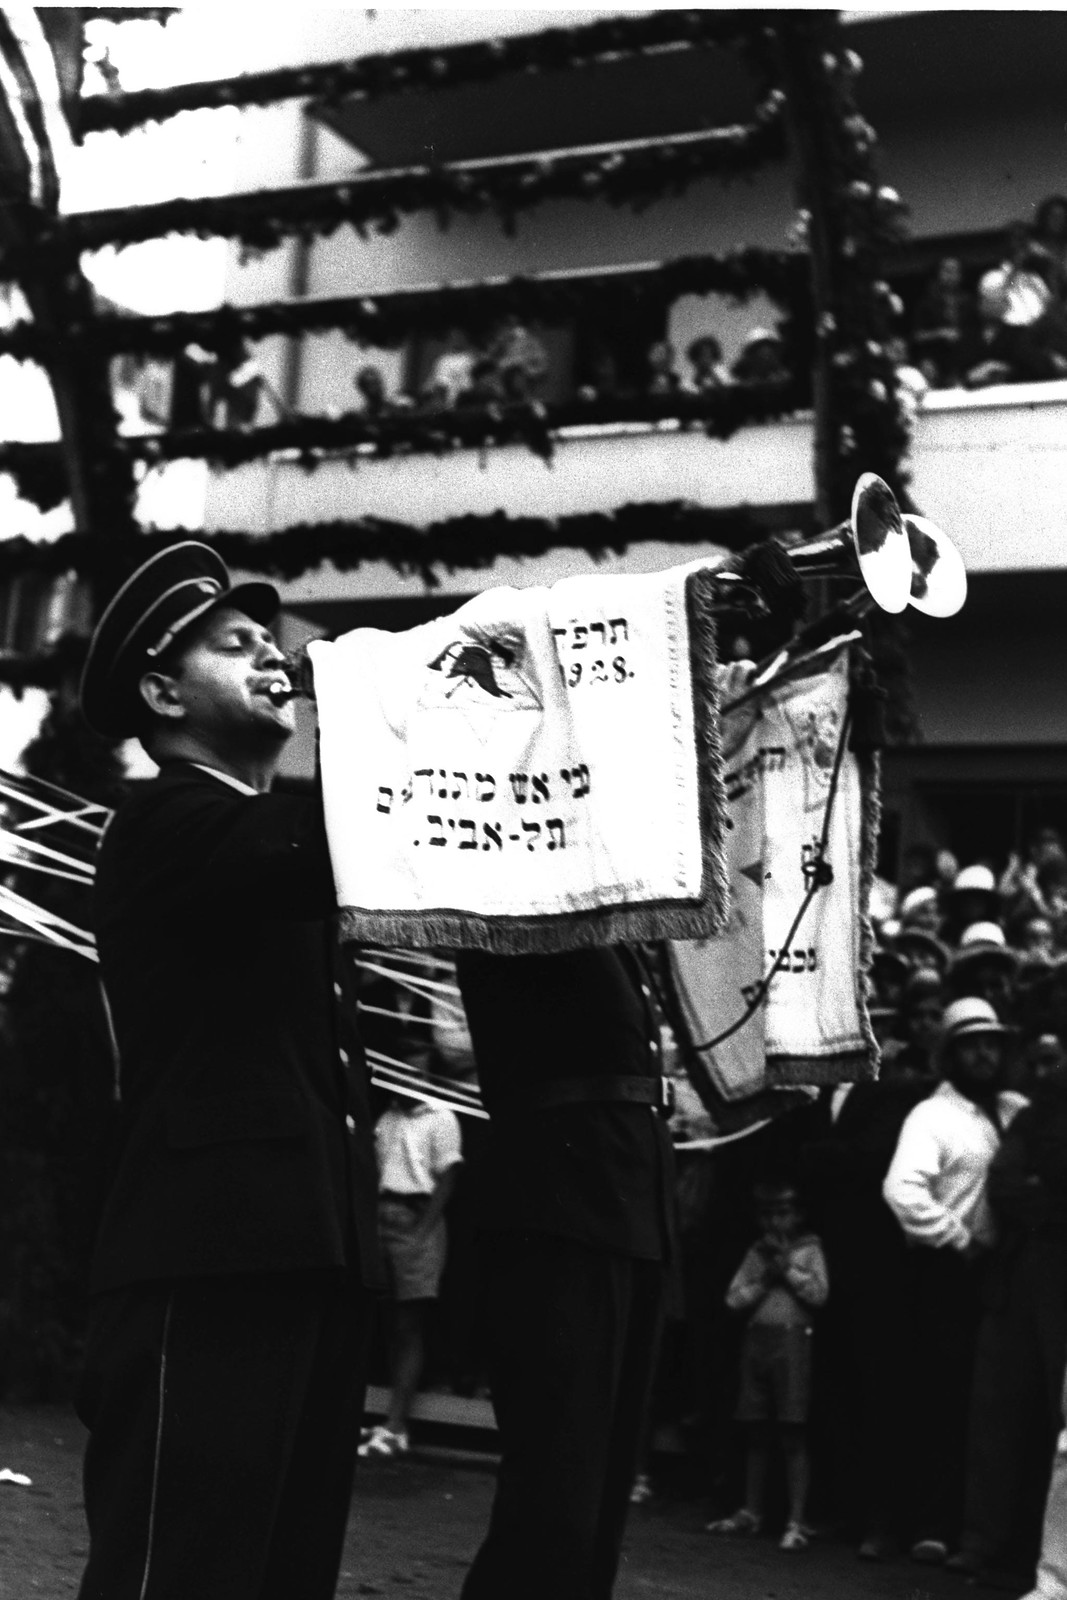 1935. Церемония открытия улицы «Кинг Джордж» в Тель-Авиве. На фото оркестр пожарной части выступает на церемонии.